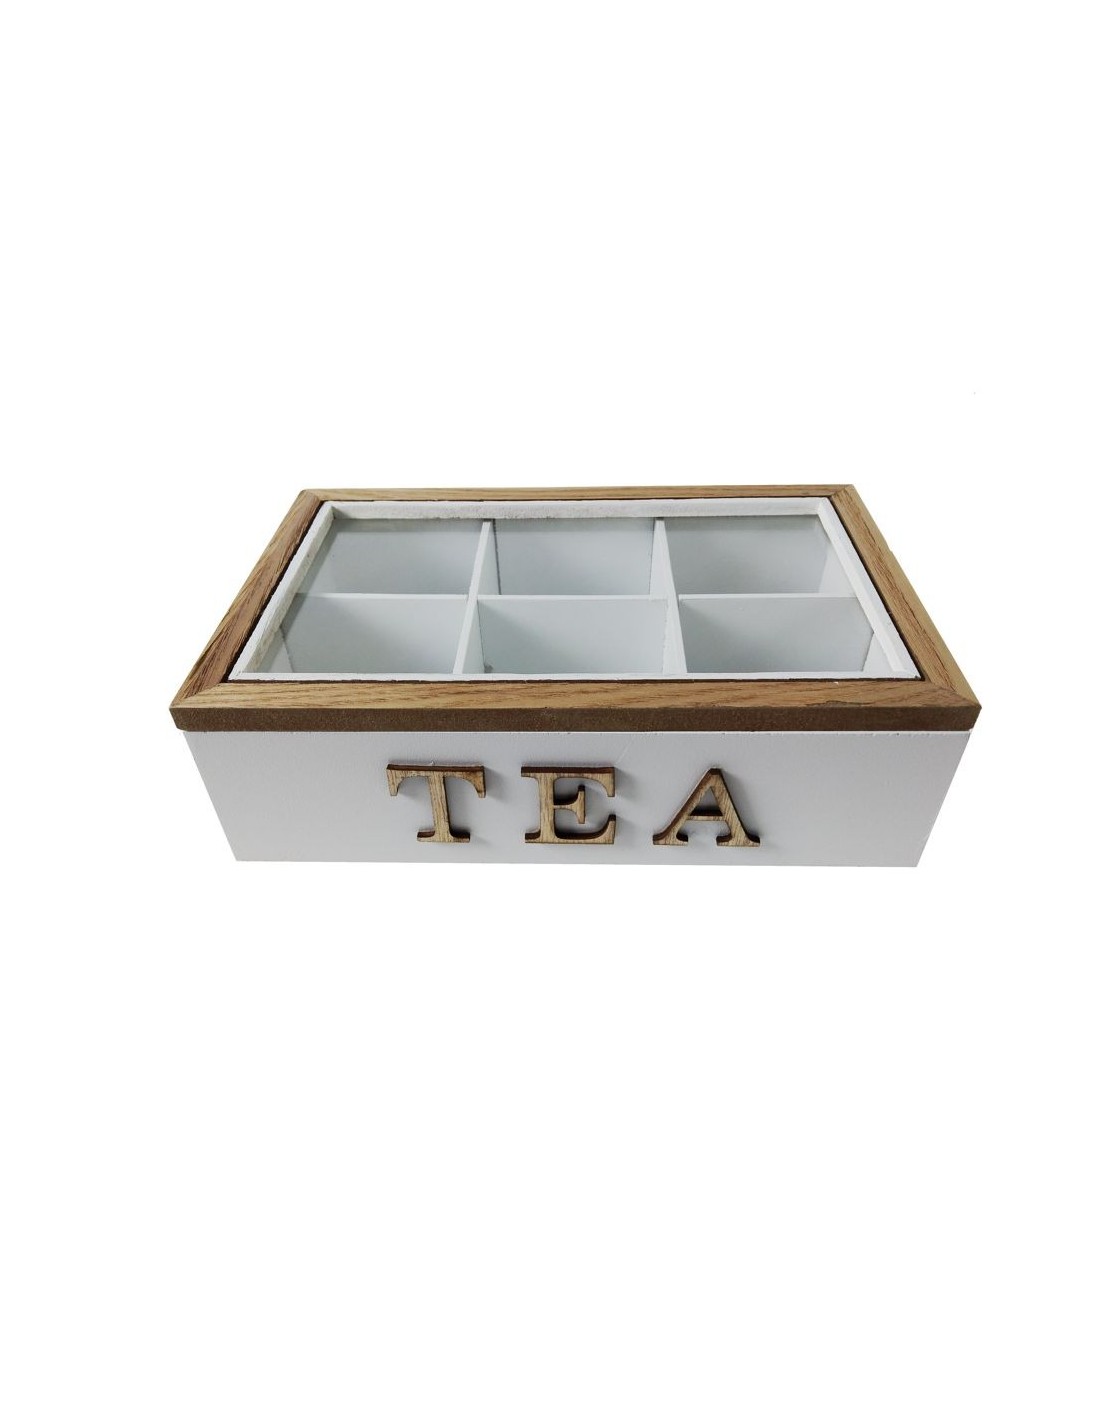 Boîte à thé en bois avec tiroirs, boîtes à thé pour sachets de thé